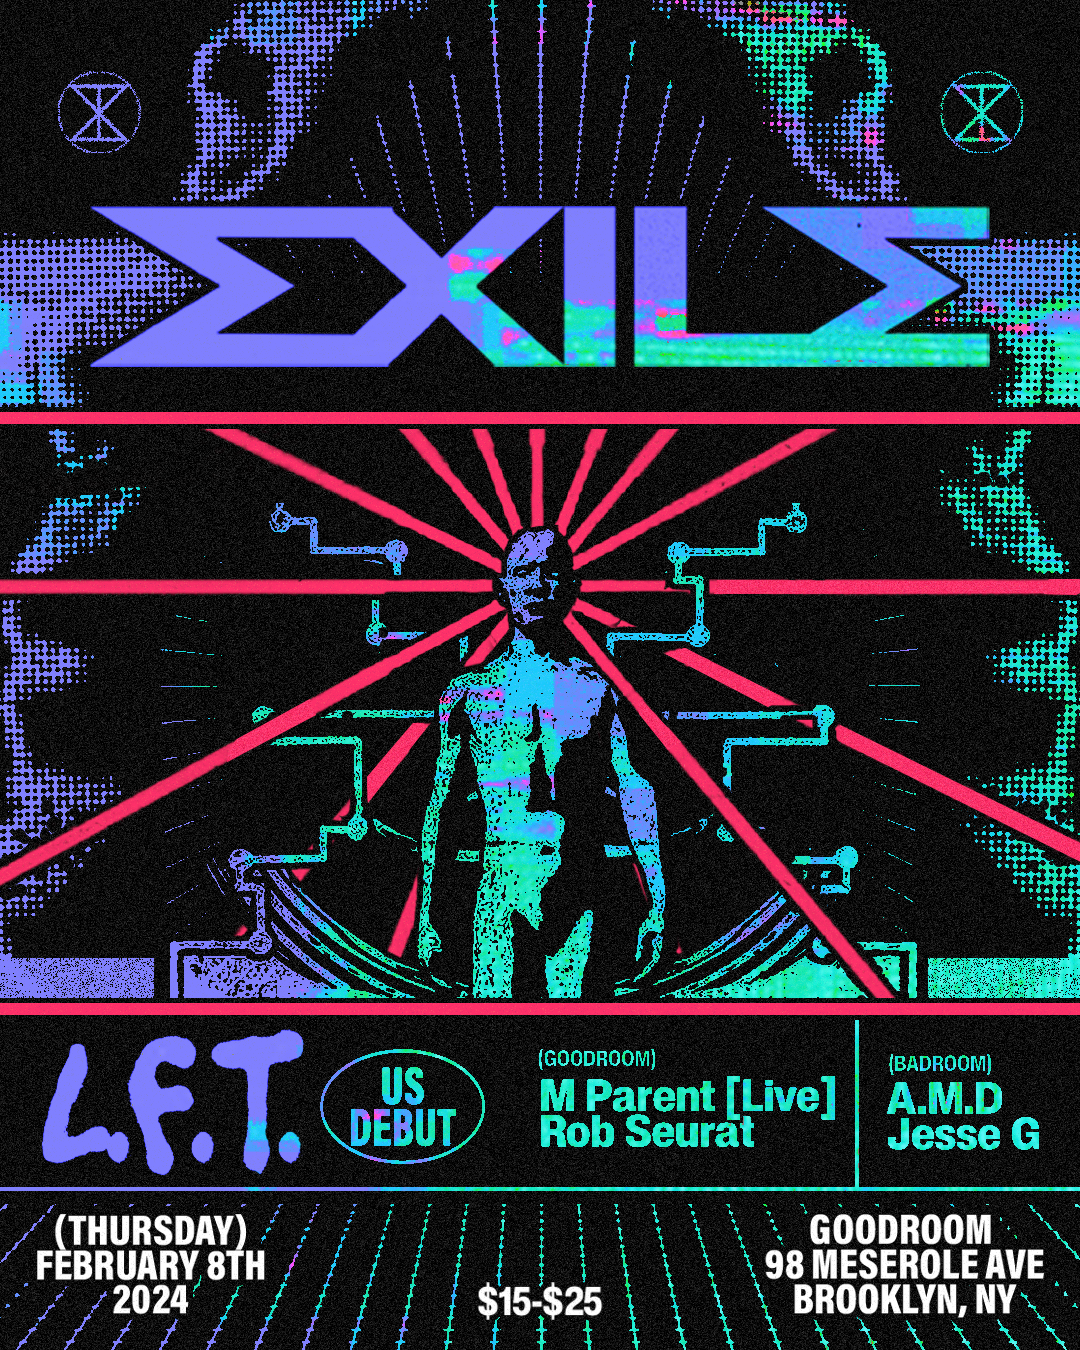 EXILE: L.F.T. [US DEBUT] // M Parent [LIVE] - フライヤー表